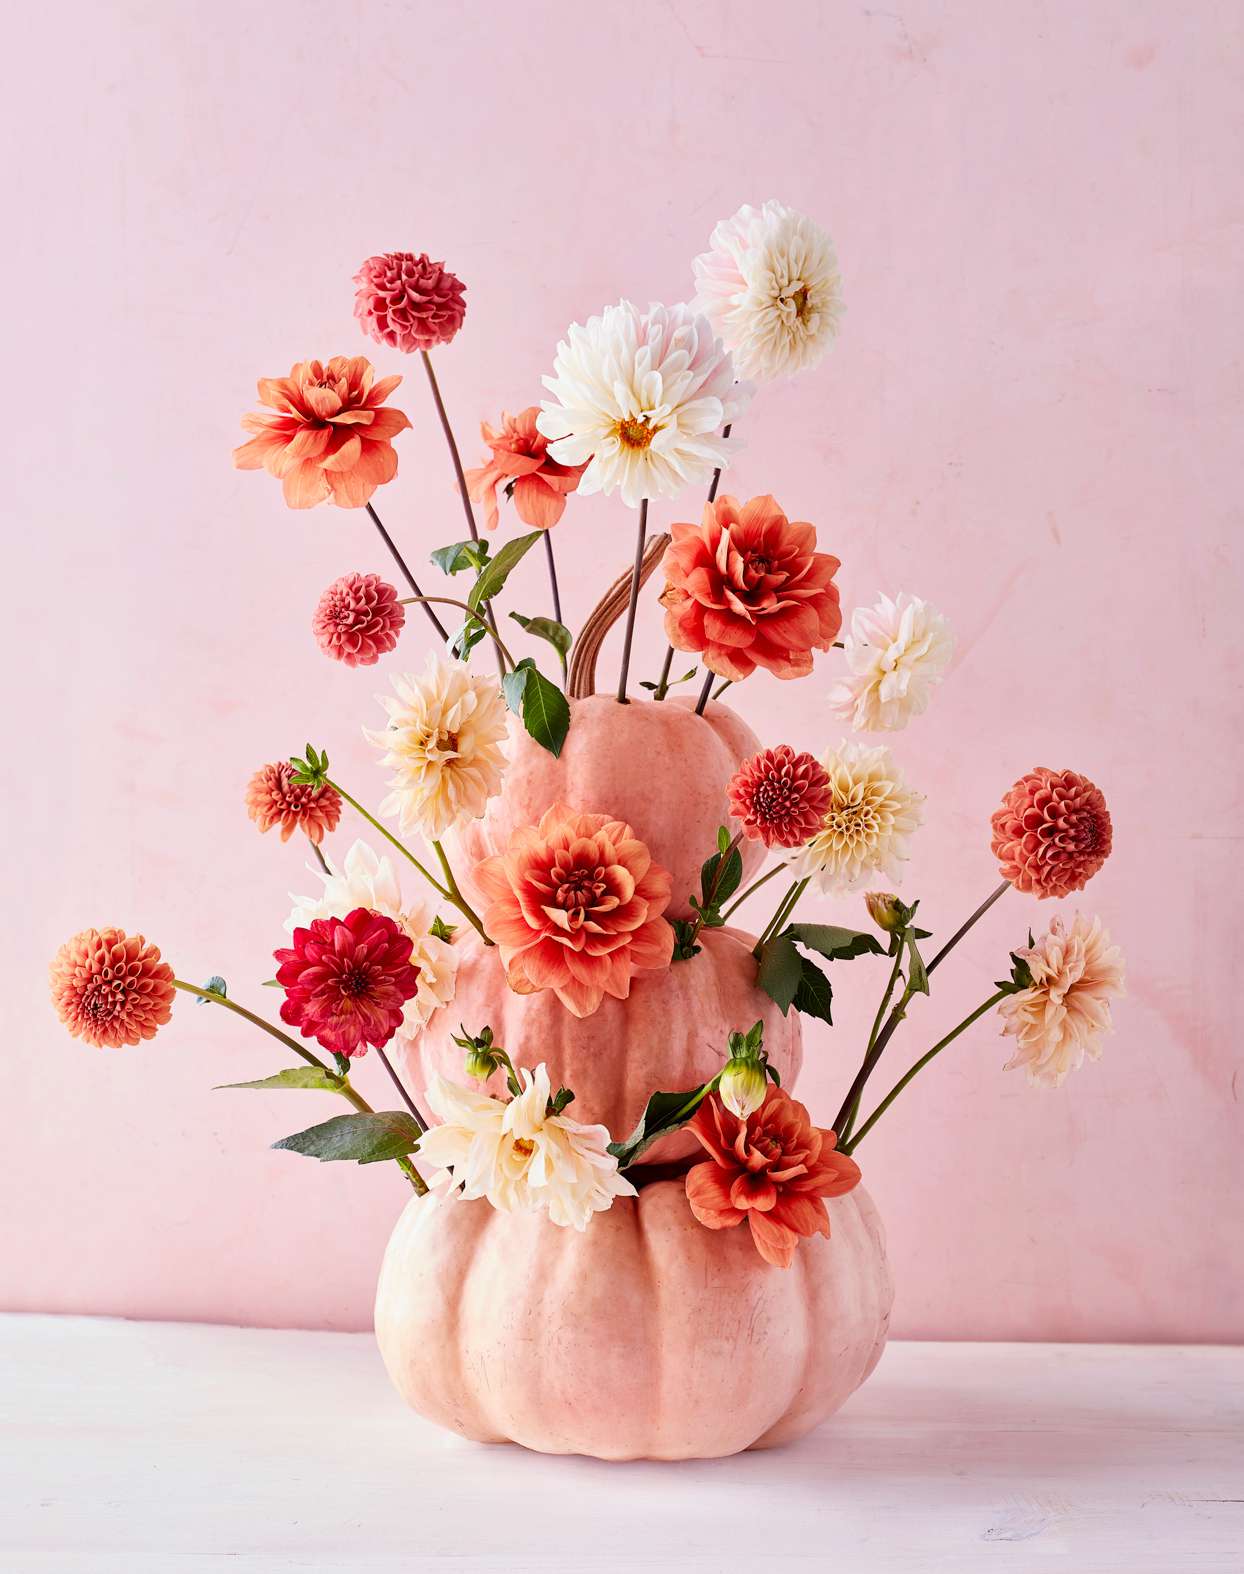 Flowers in gourd vase